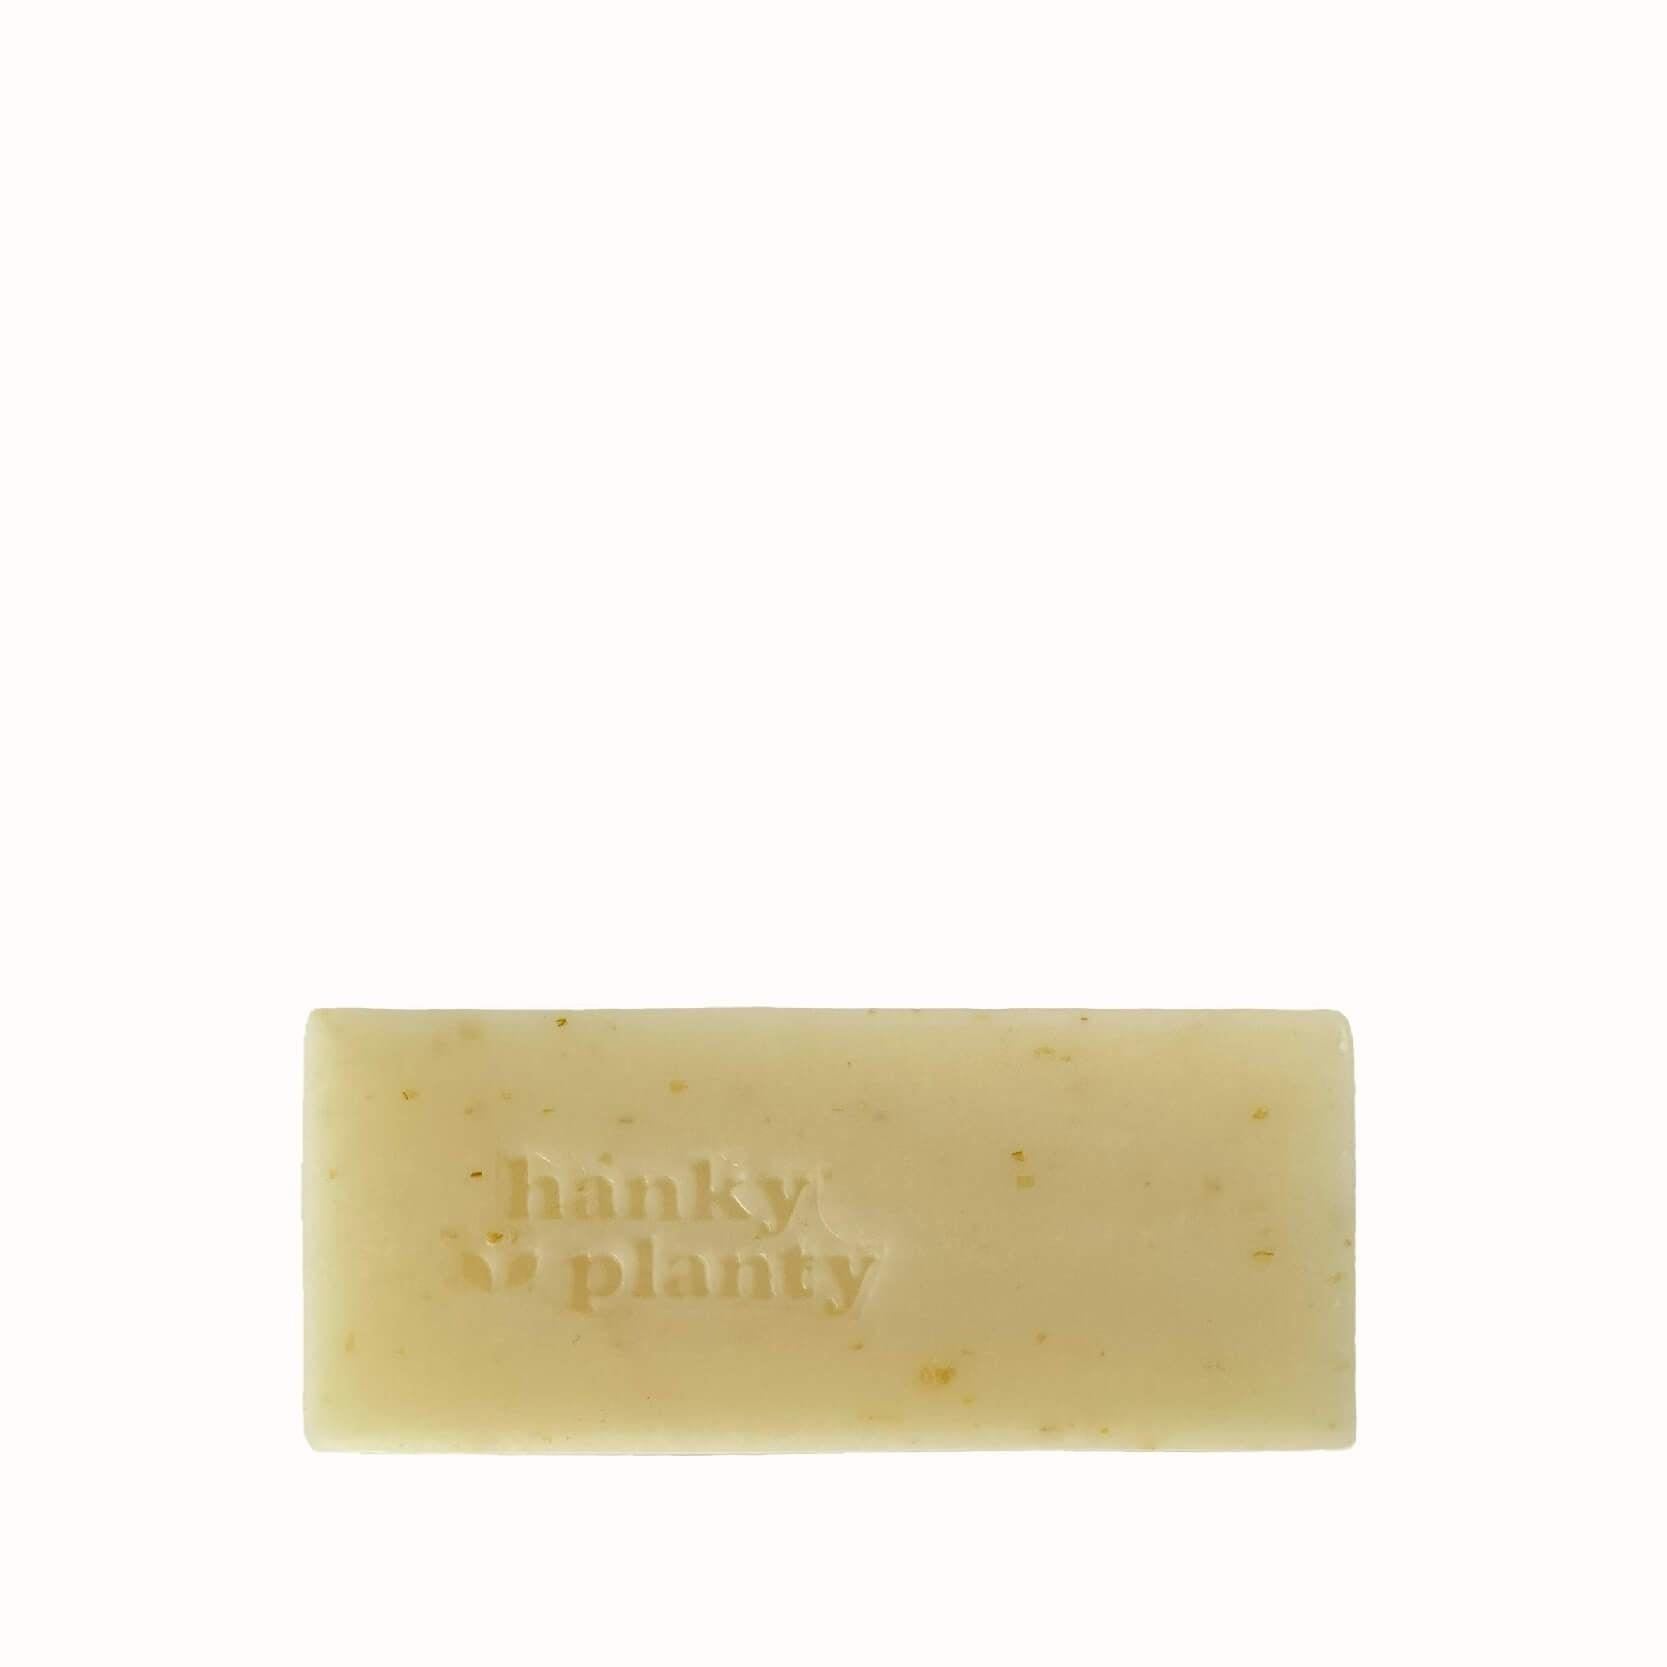 Hanky Planty Oat & Yogurt Soap Bar (145g).